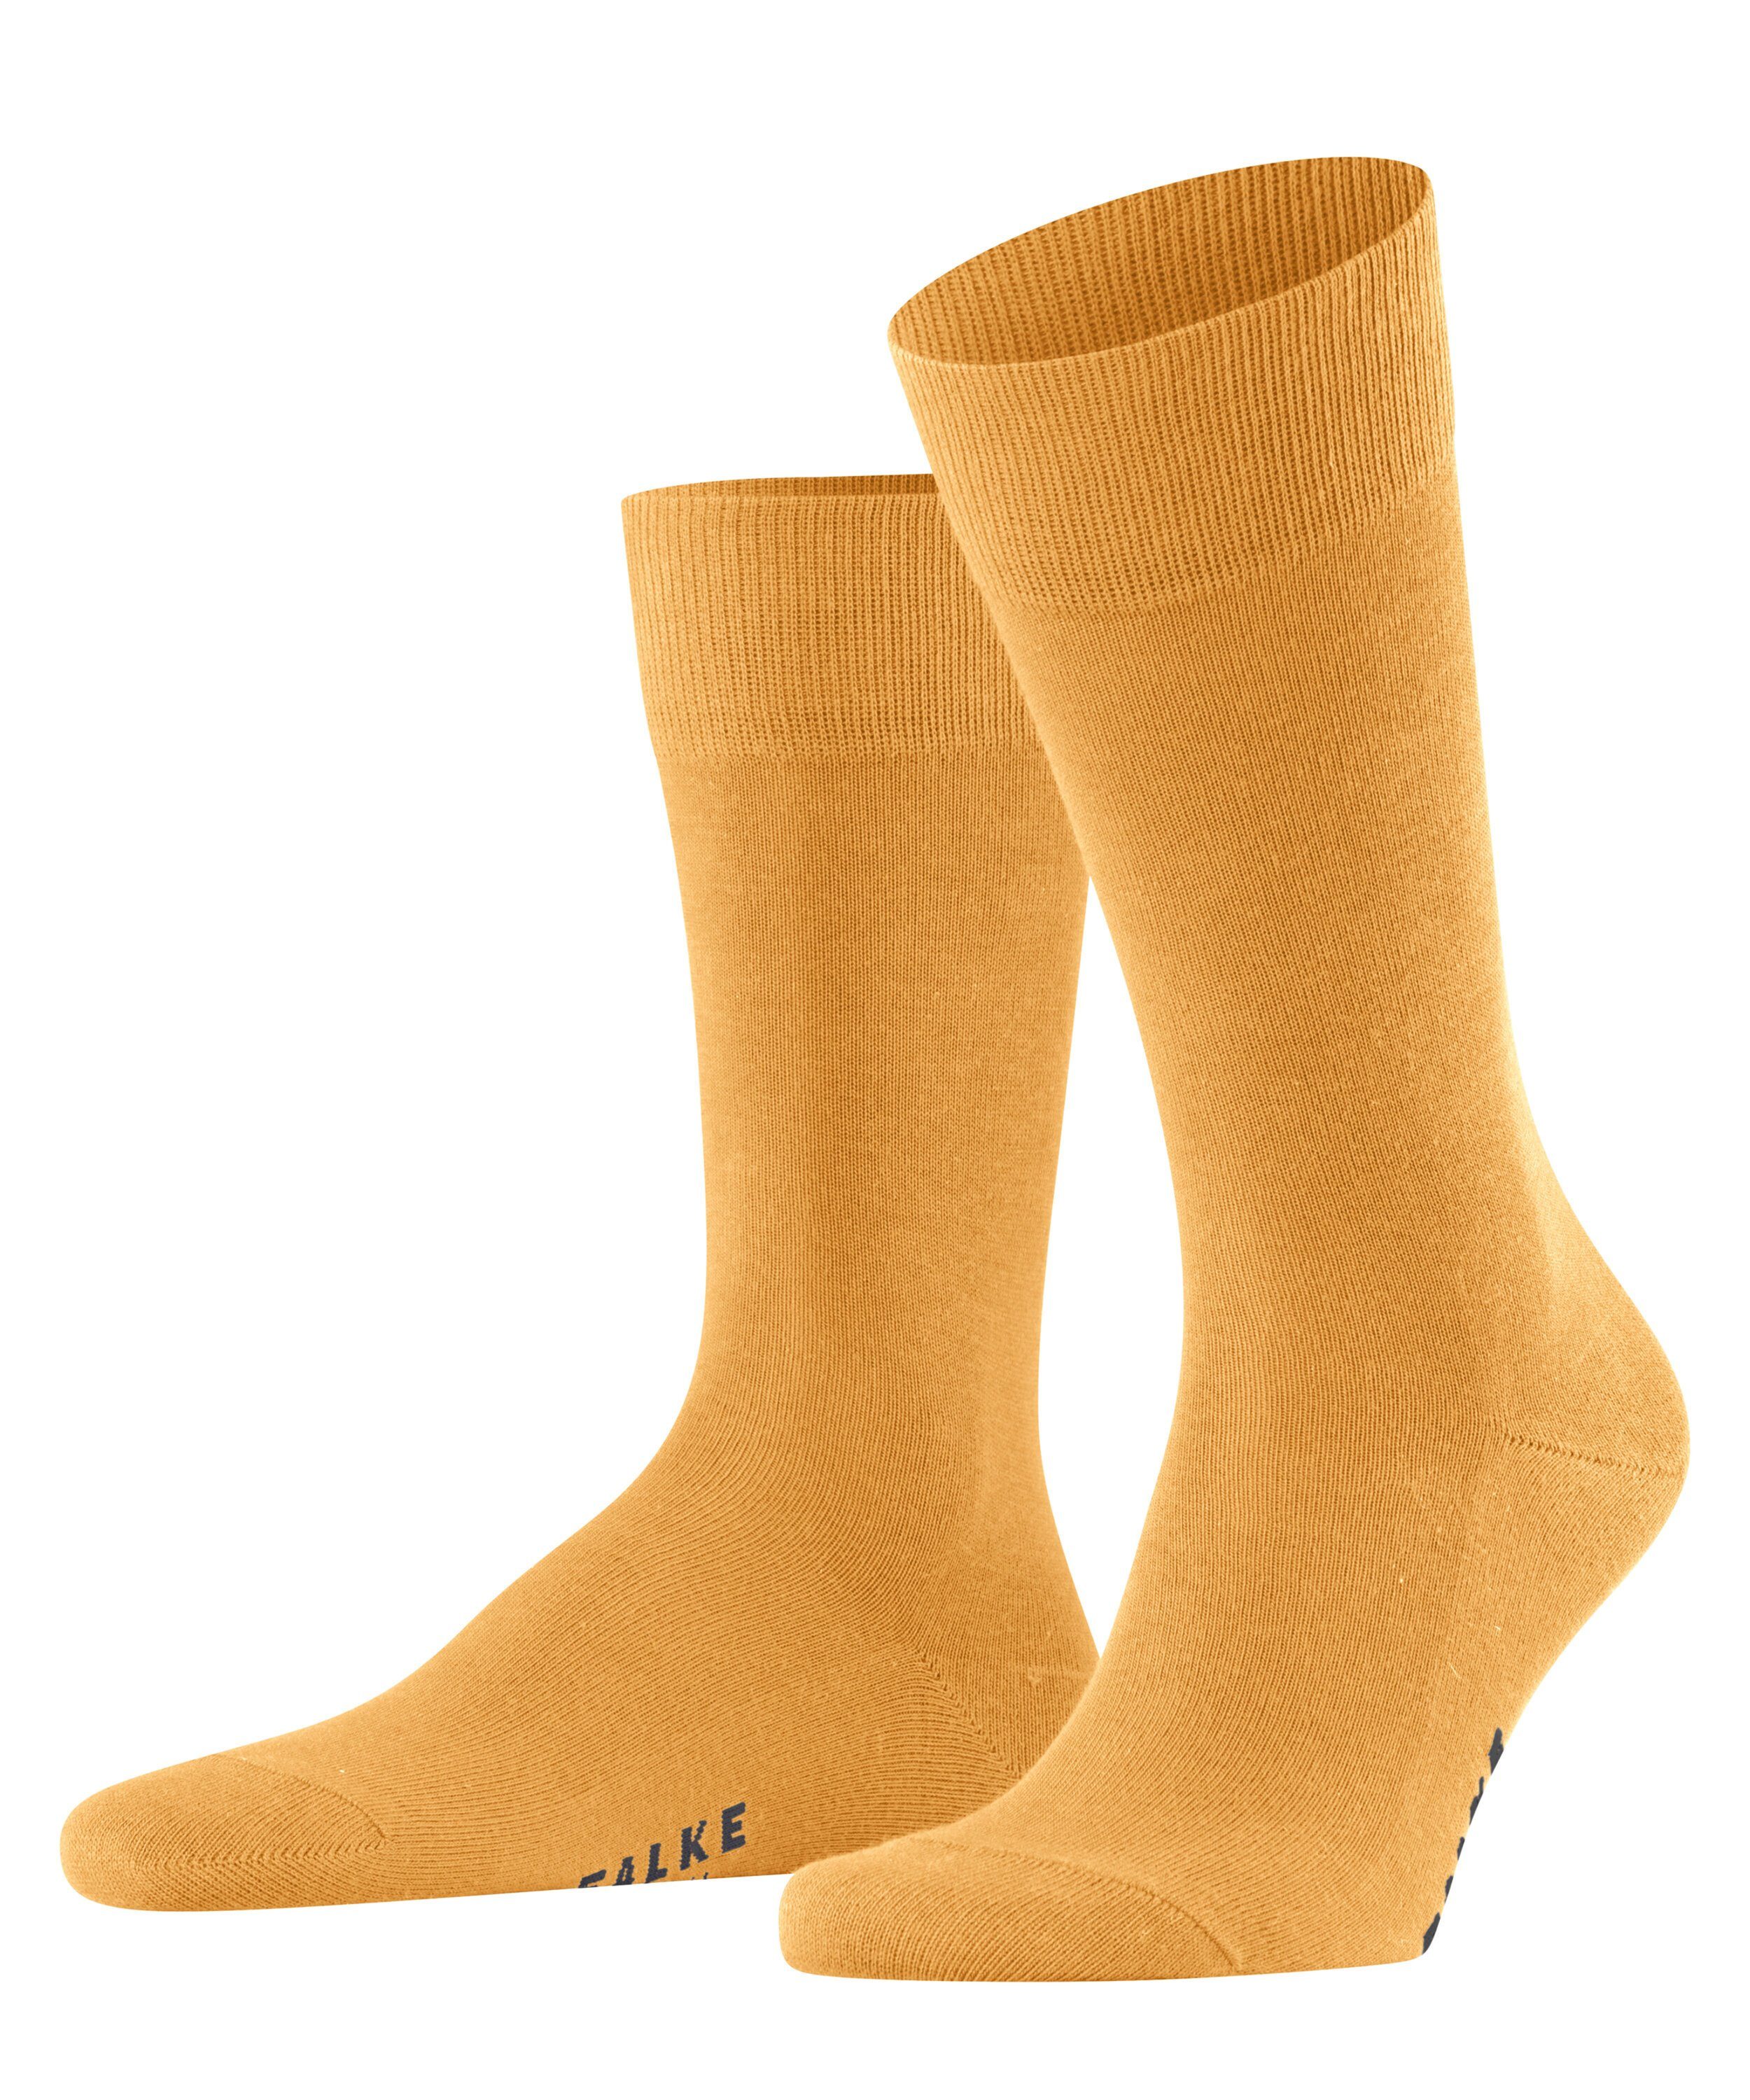 FALKE Socken Family (1-Paar) online kaufen | OTTO